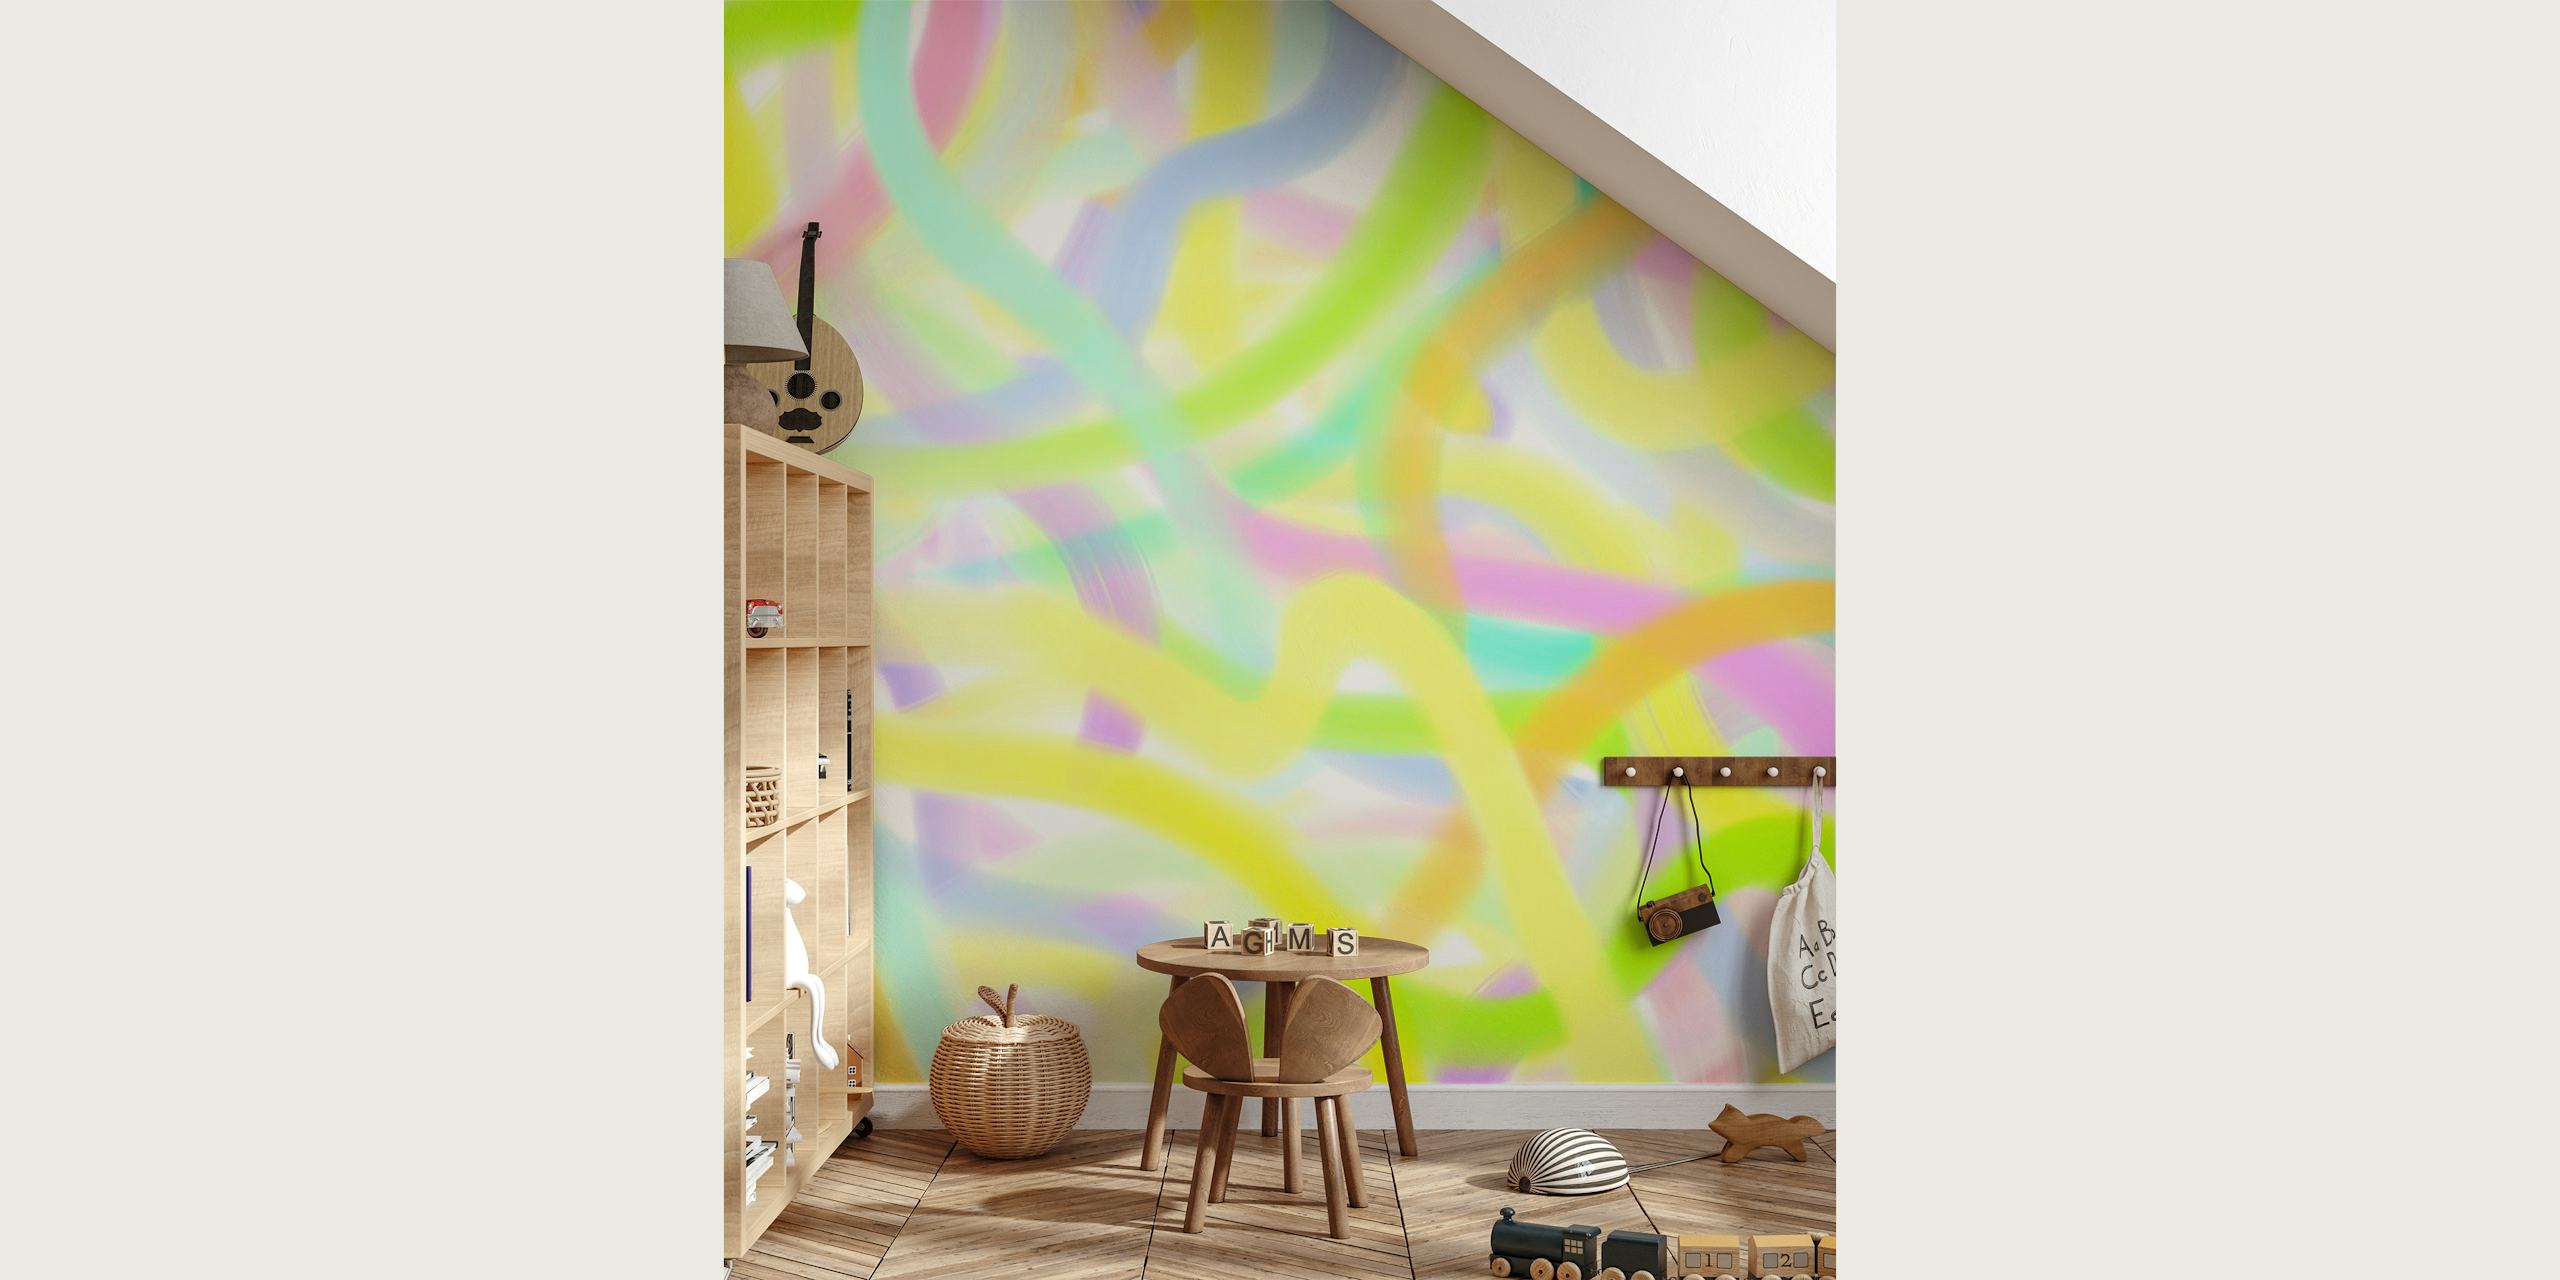 Apstraktni vrtložni zidni mural pastelnih boja 'Cianfrusaglia 08'